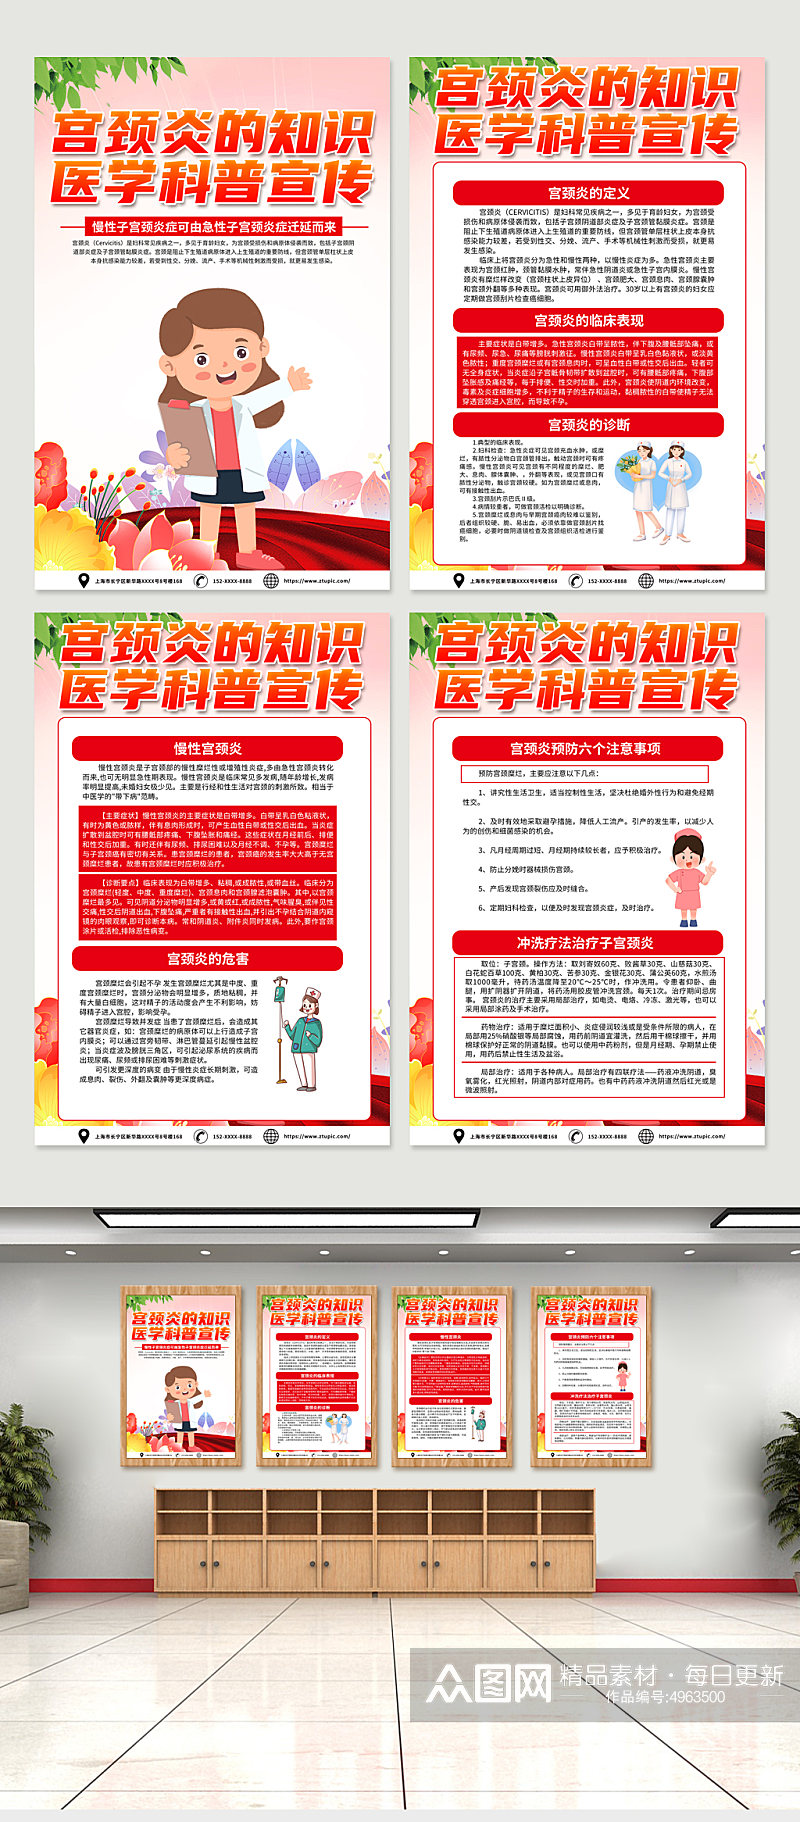 红色创意宫颈炎医学科普知识宣传海报设计素材